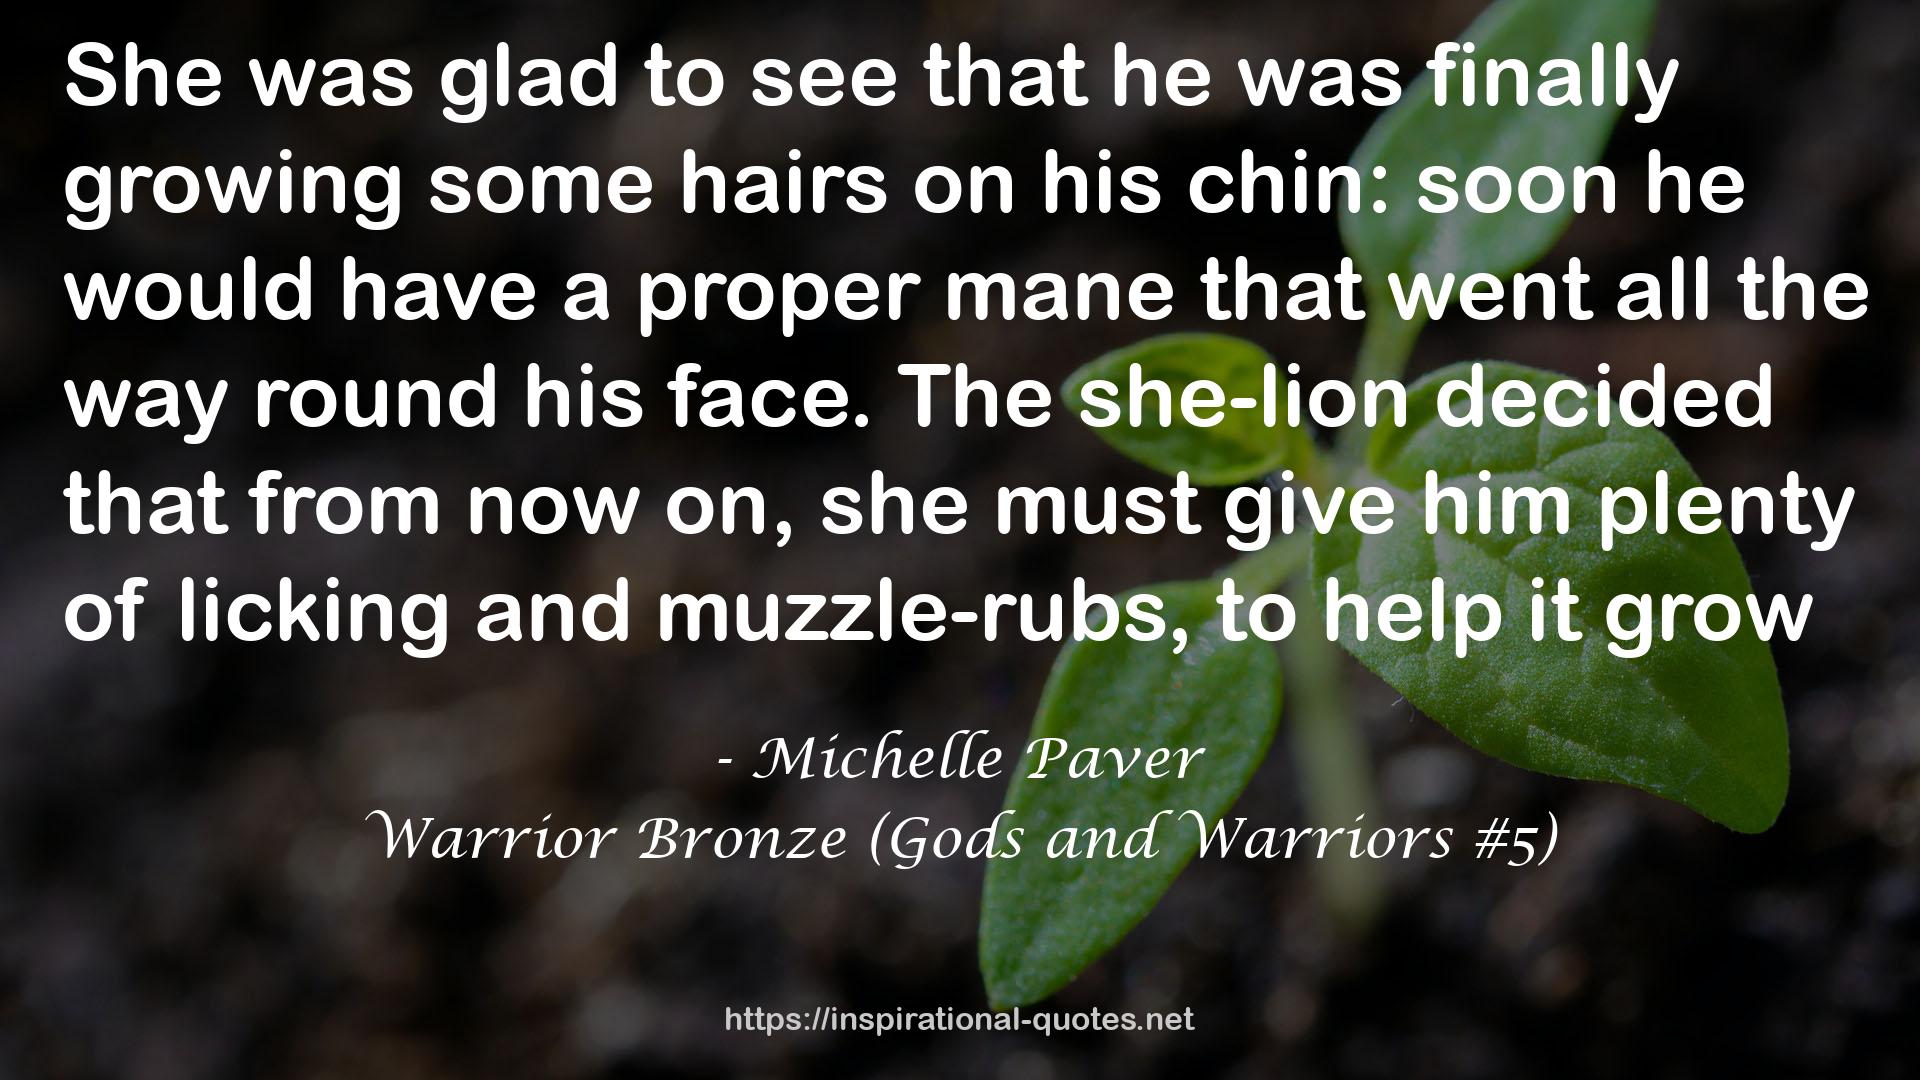 Warrior Bronze (Gods and Warriors #5) QUOTES